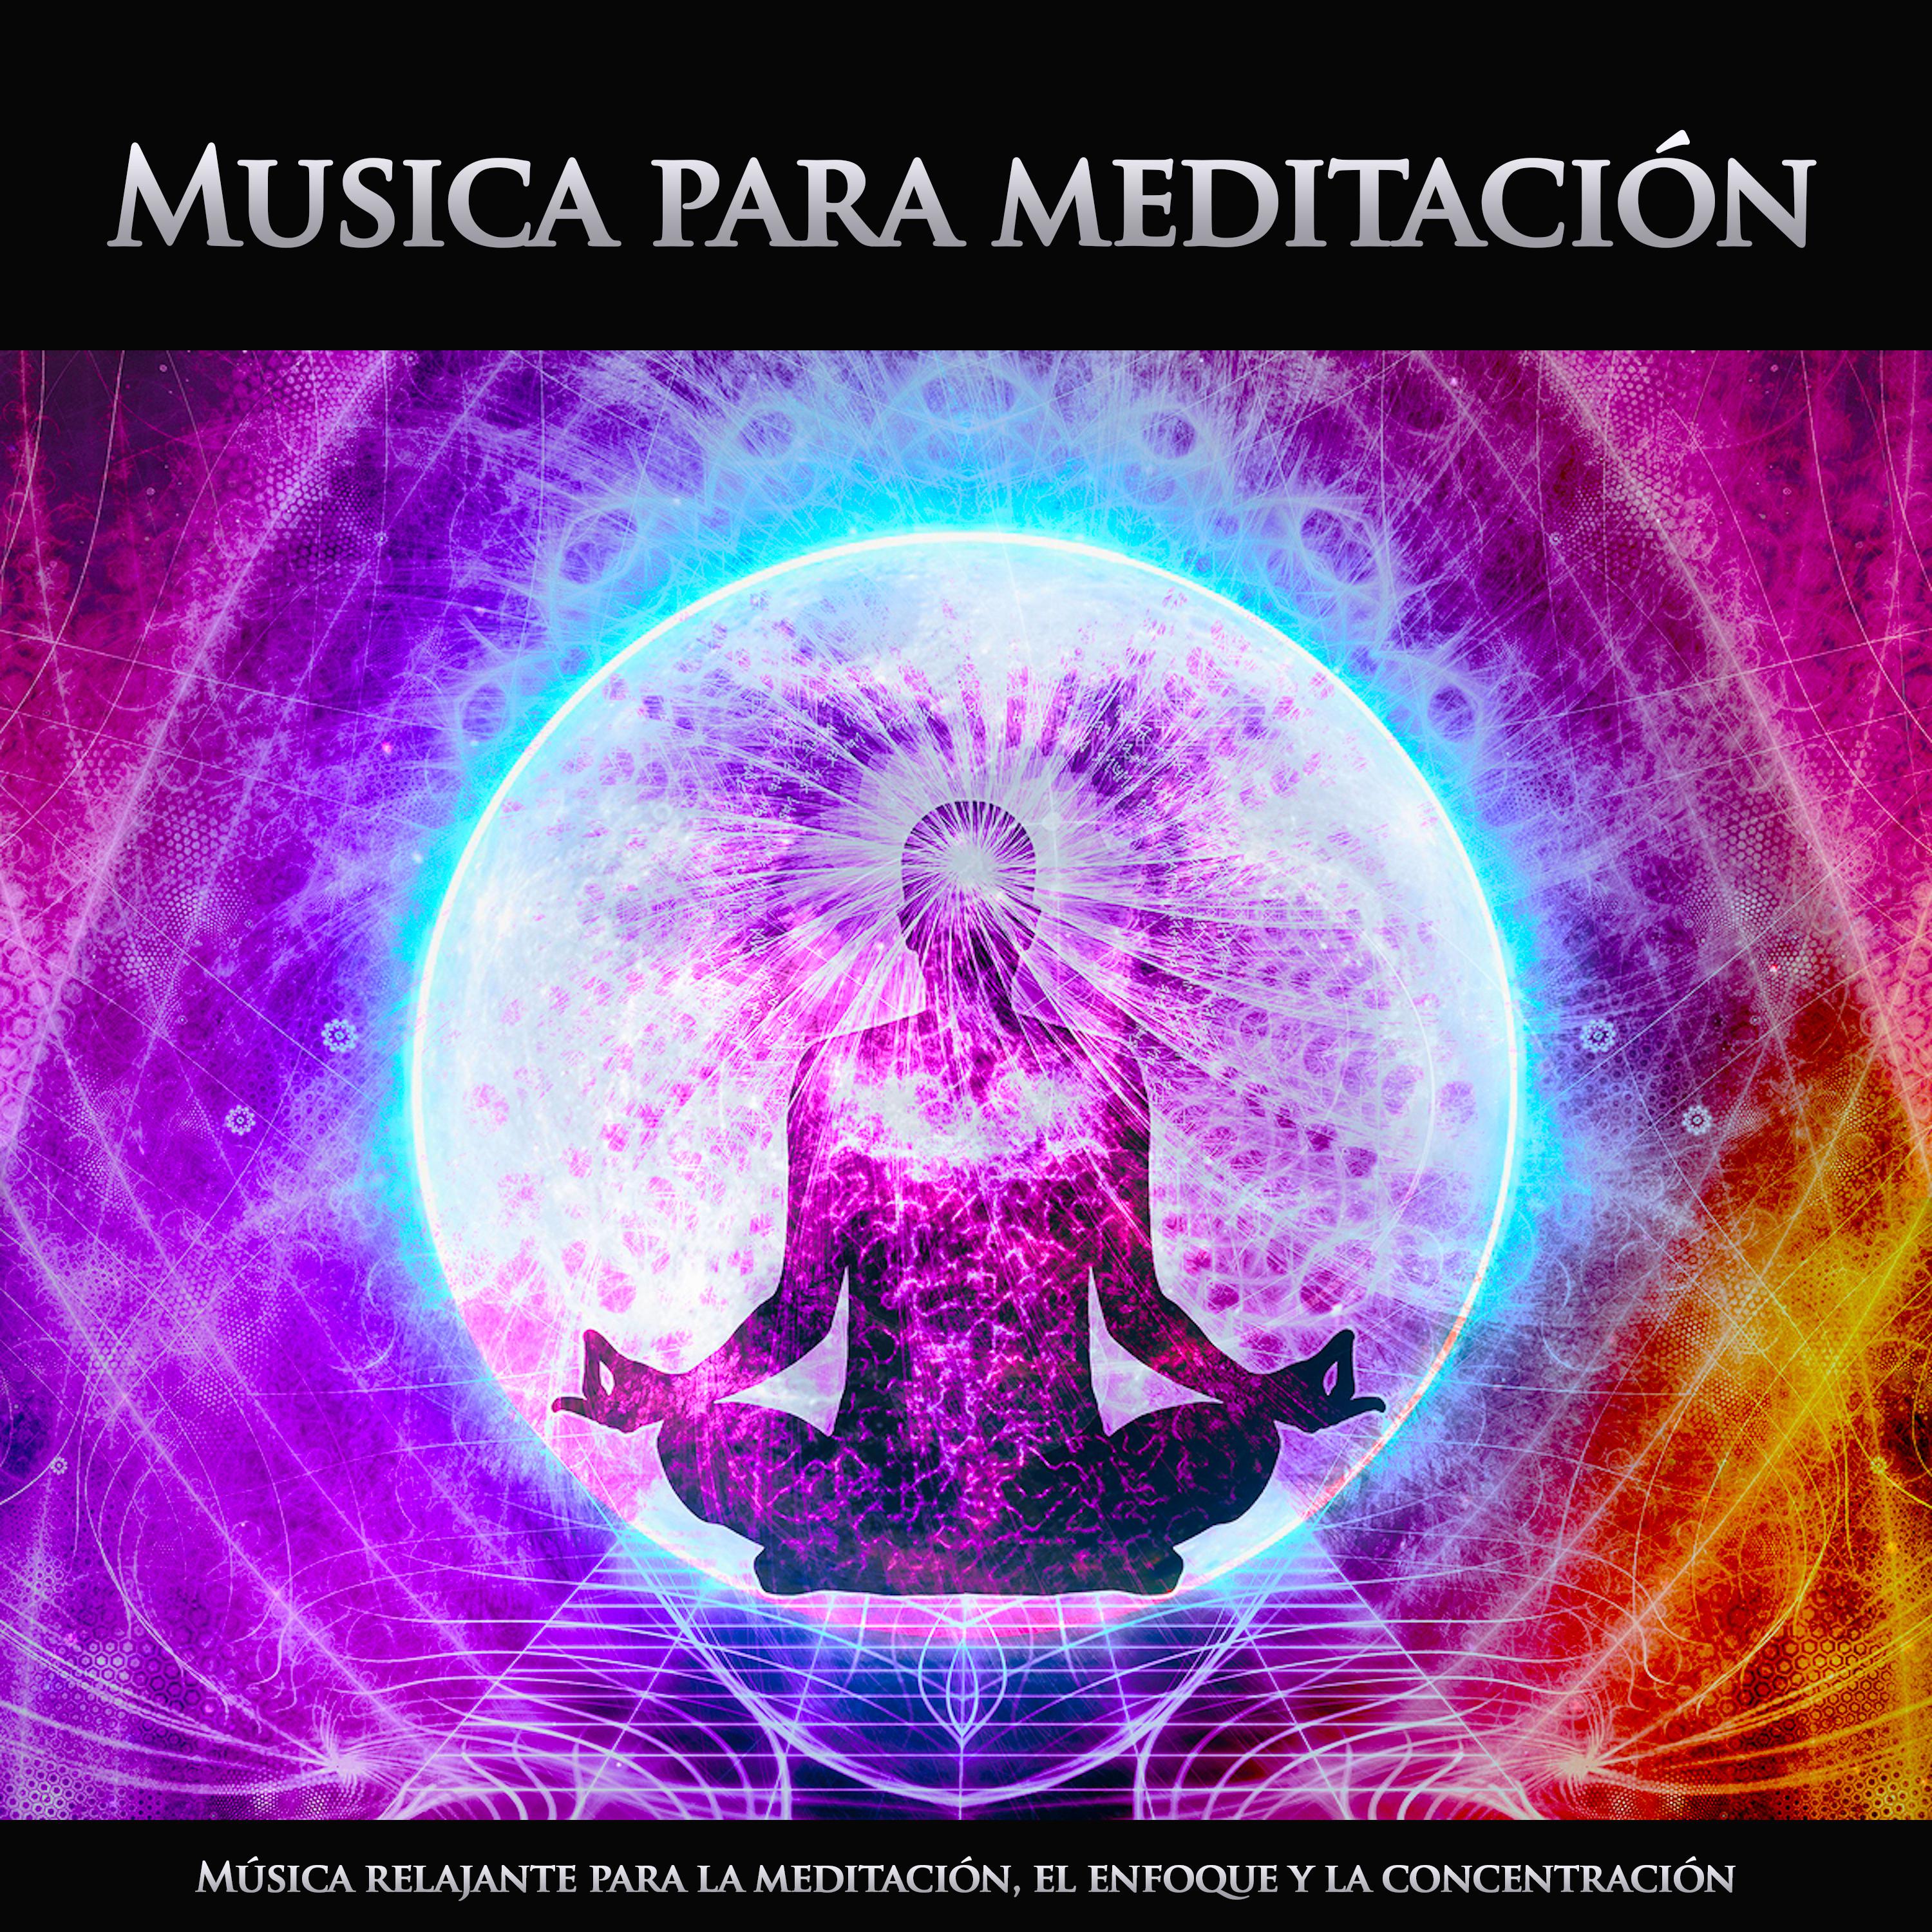 Musica para meditación - Relajarse